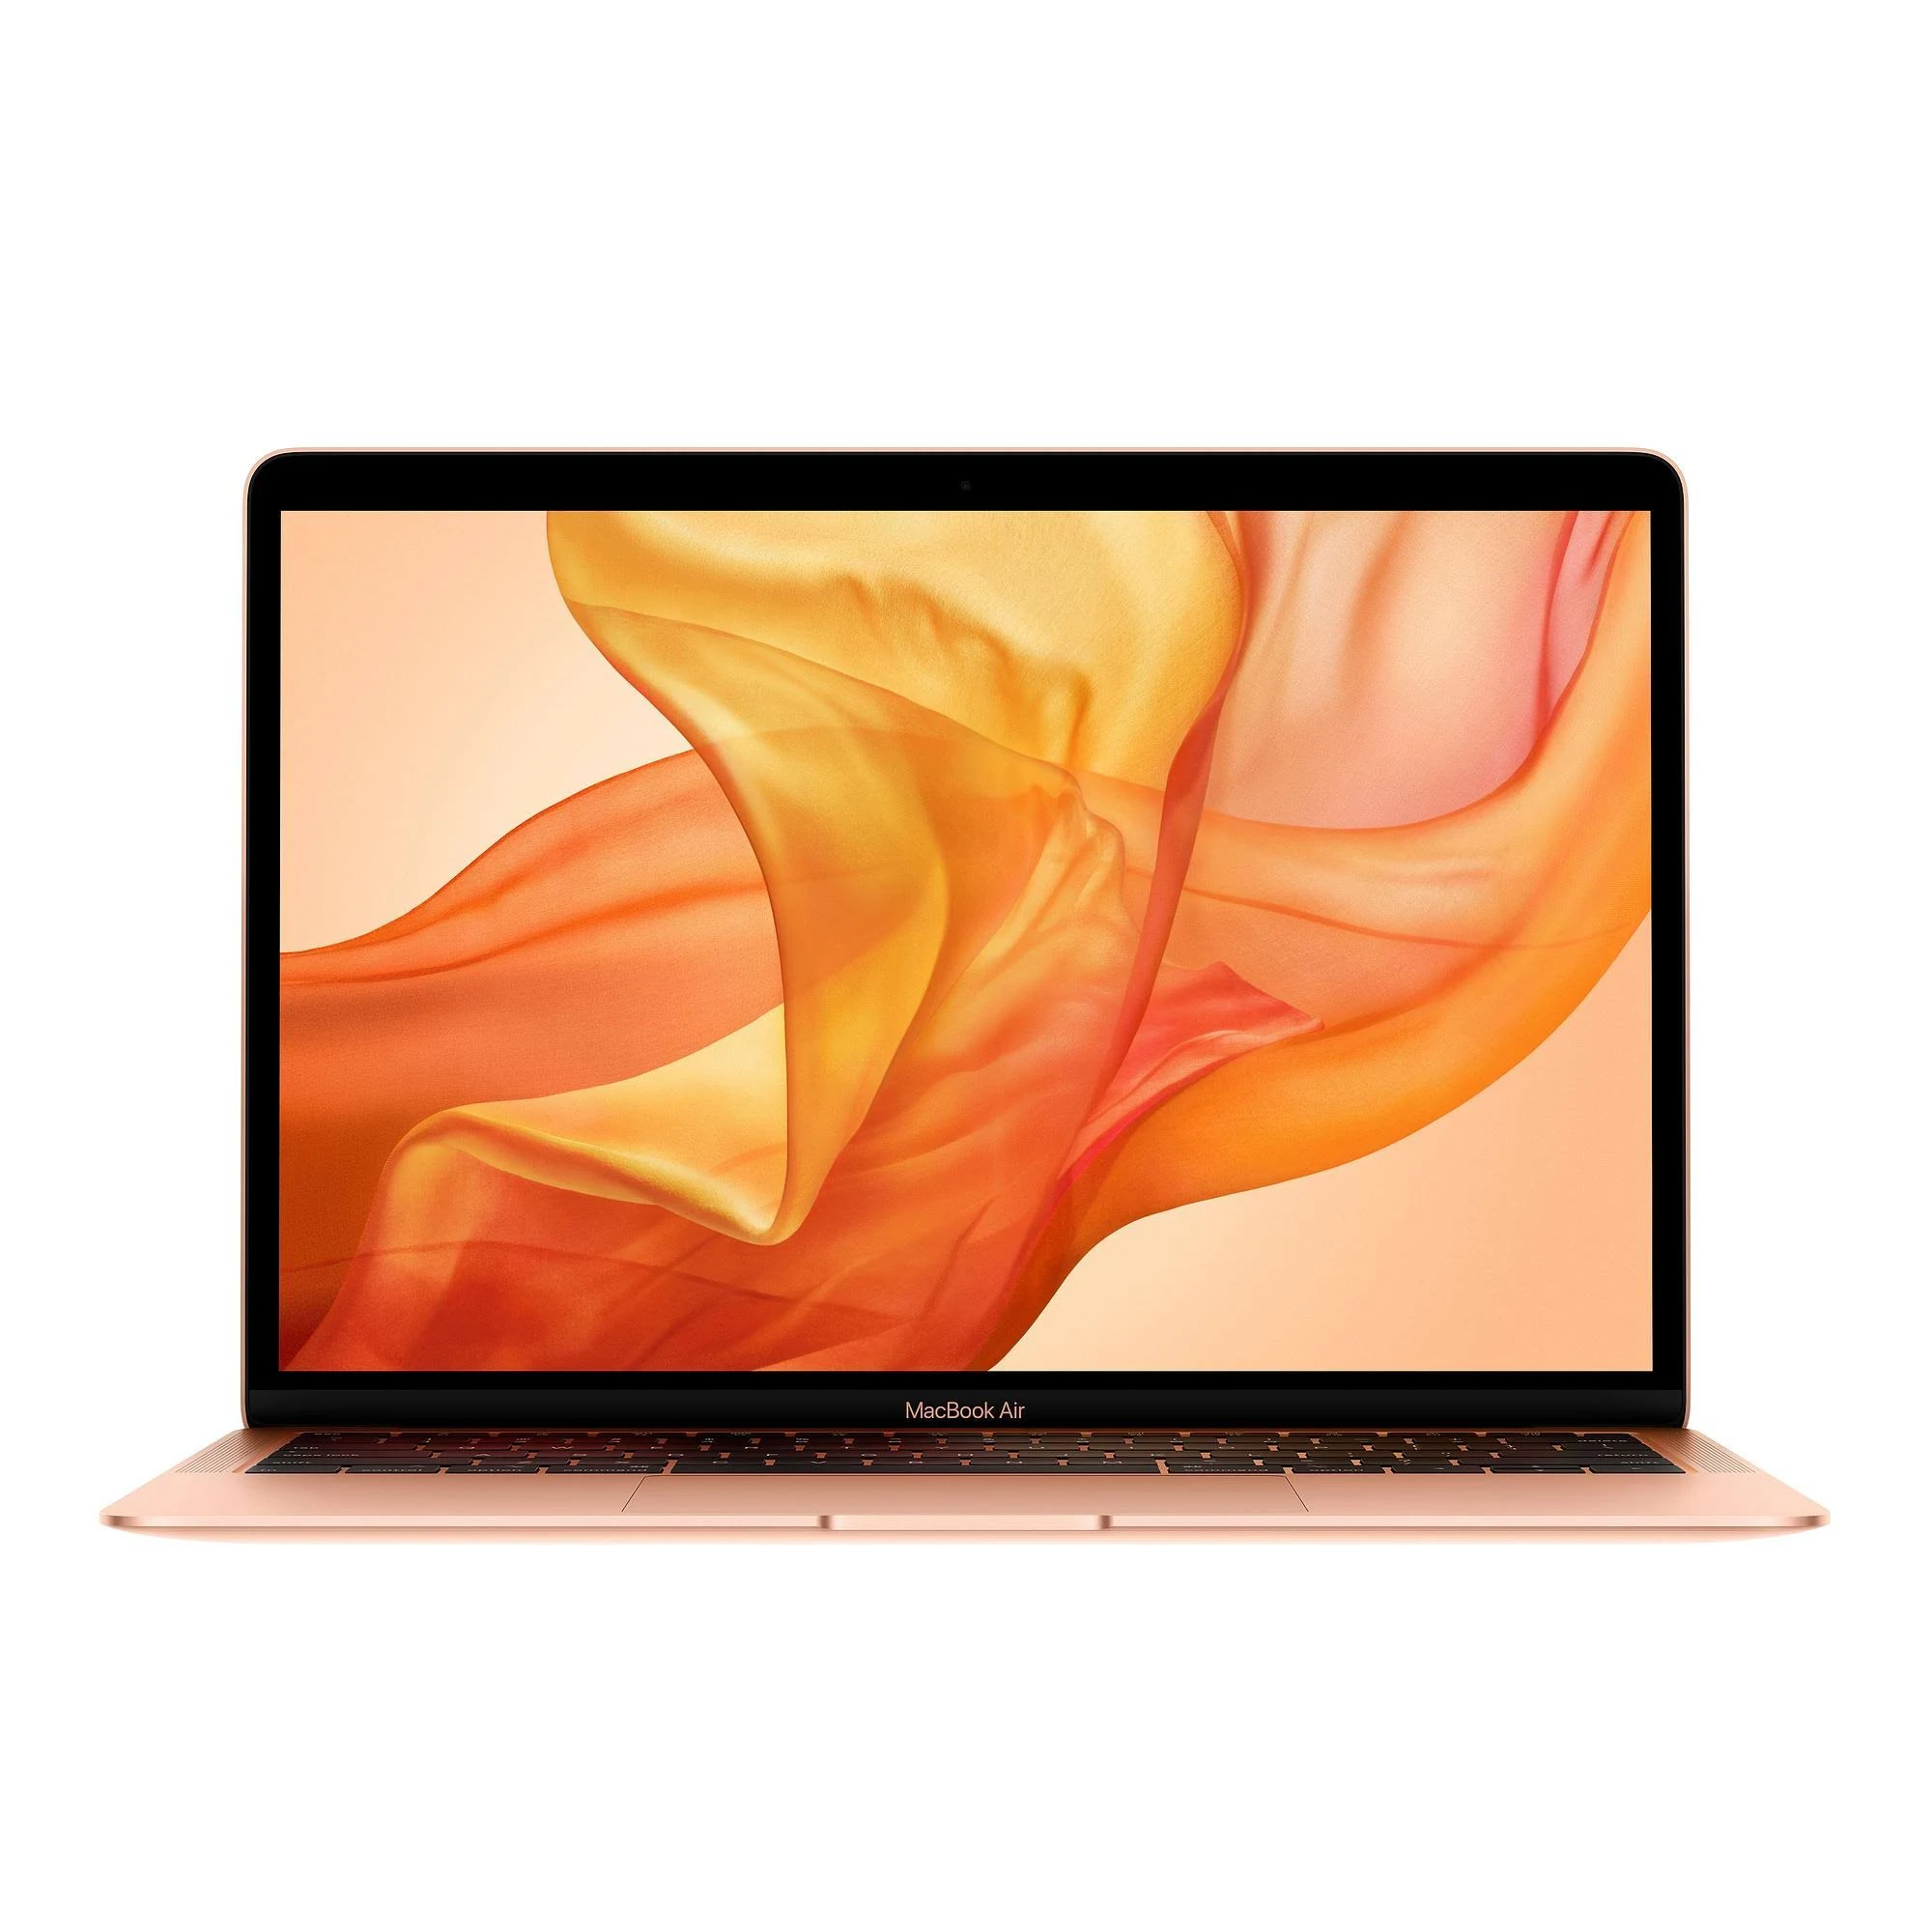 MacBook Air 13 inch 2020 Core i3 1.1GHz - 256GB SSD - 8GB Ram 256GB Gold Pristine